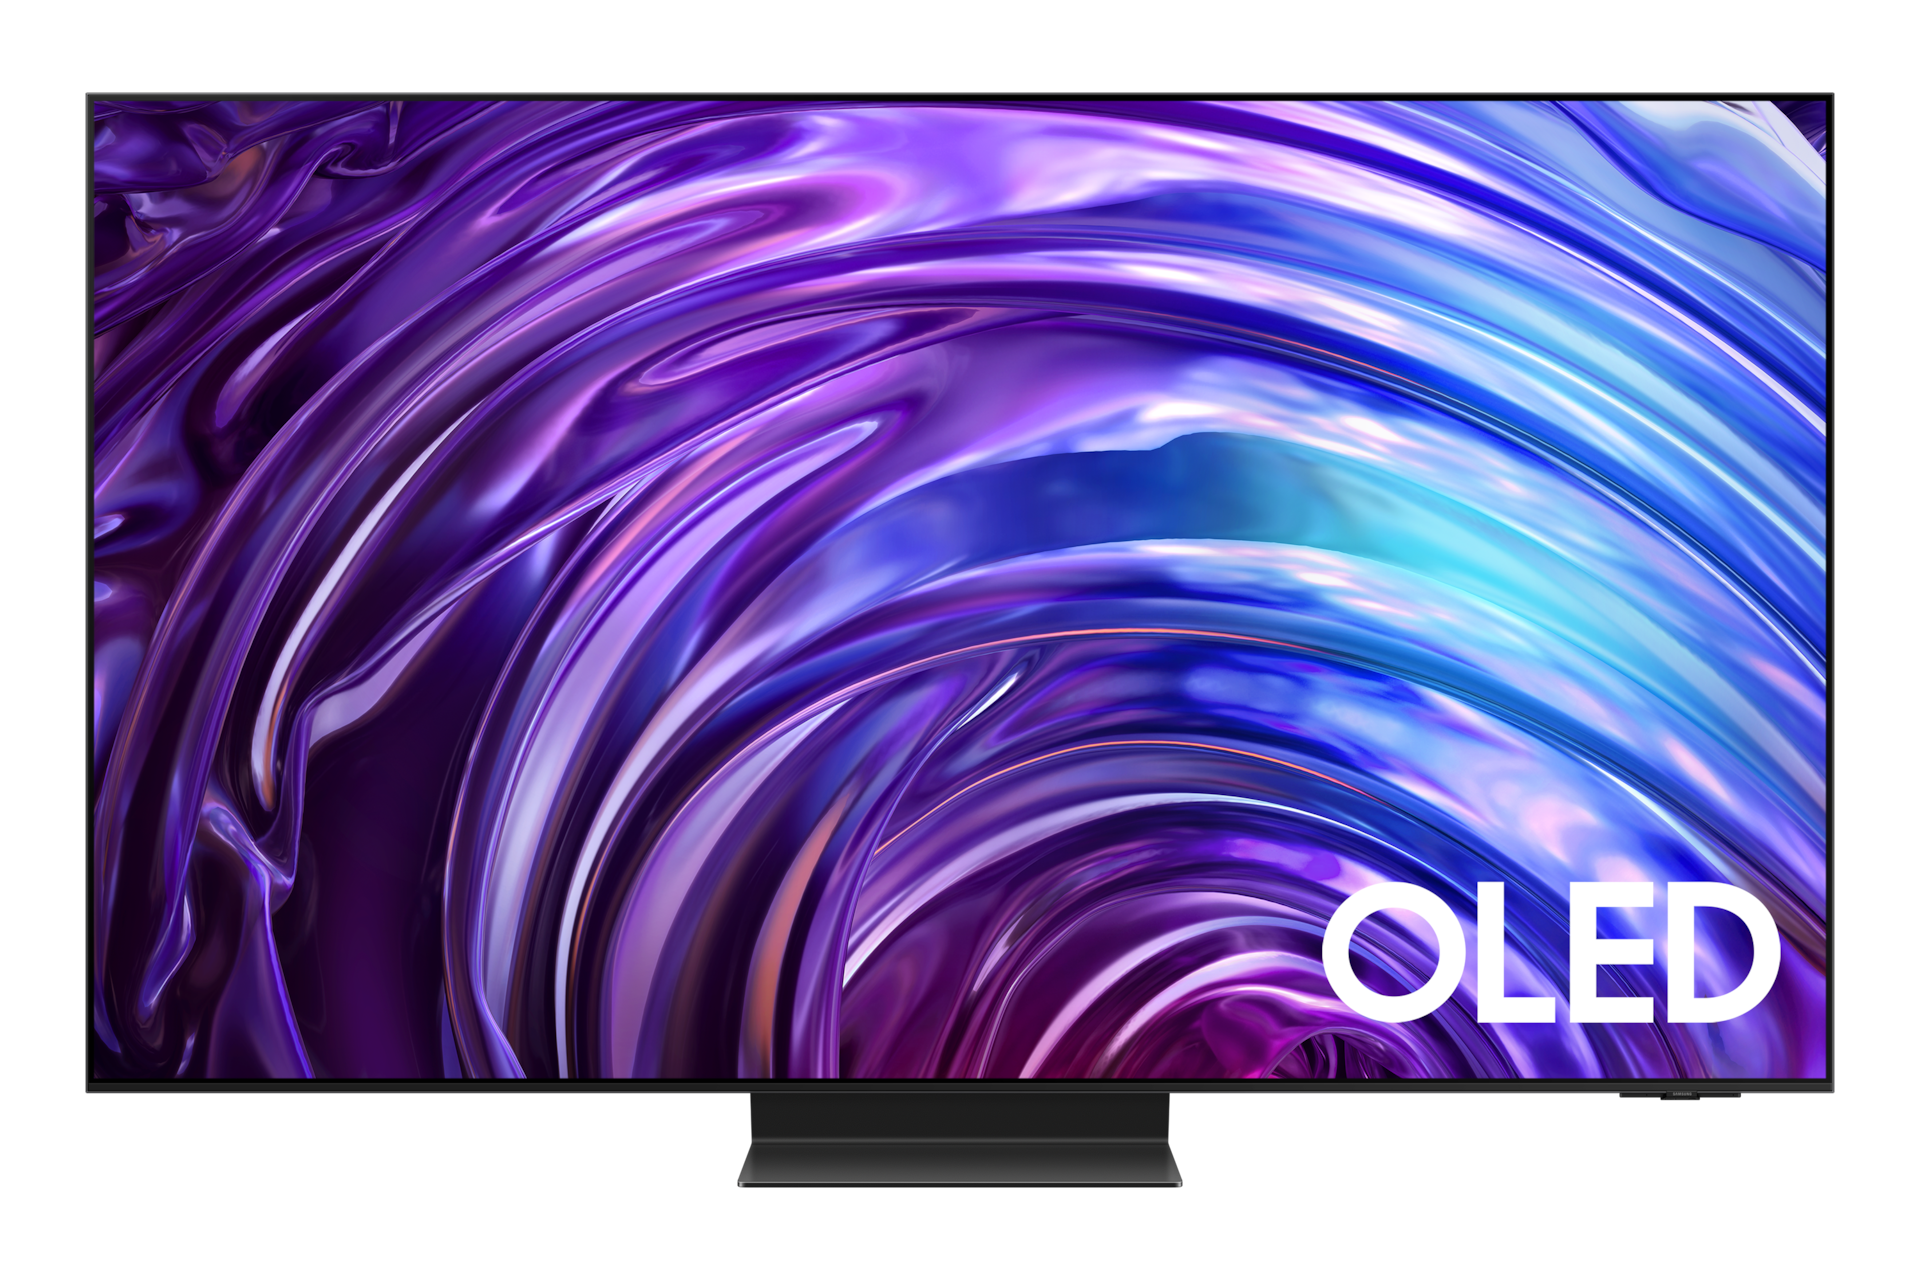 Telewizor 55” OLED S95D 4K Smart TV stojący na podstawie, widok na wprost